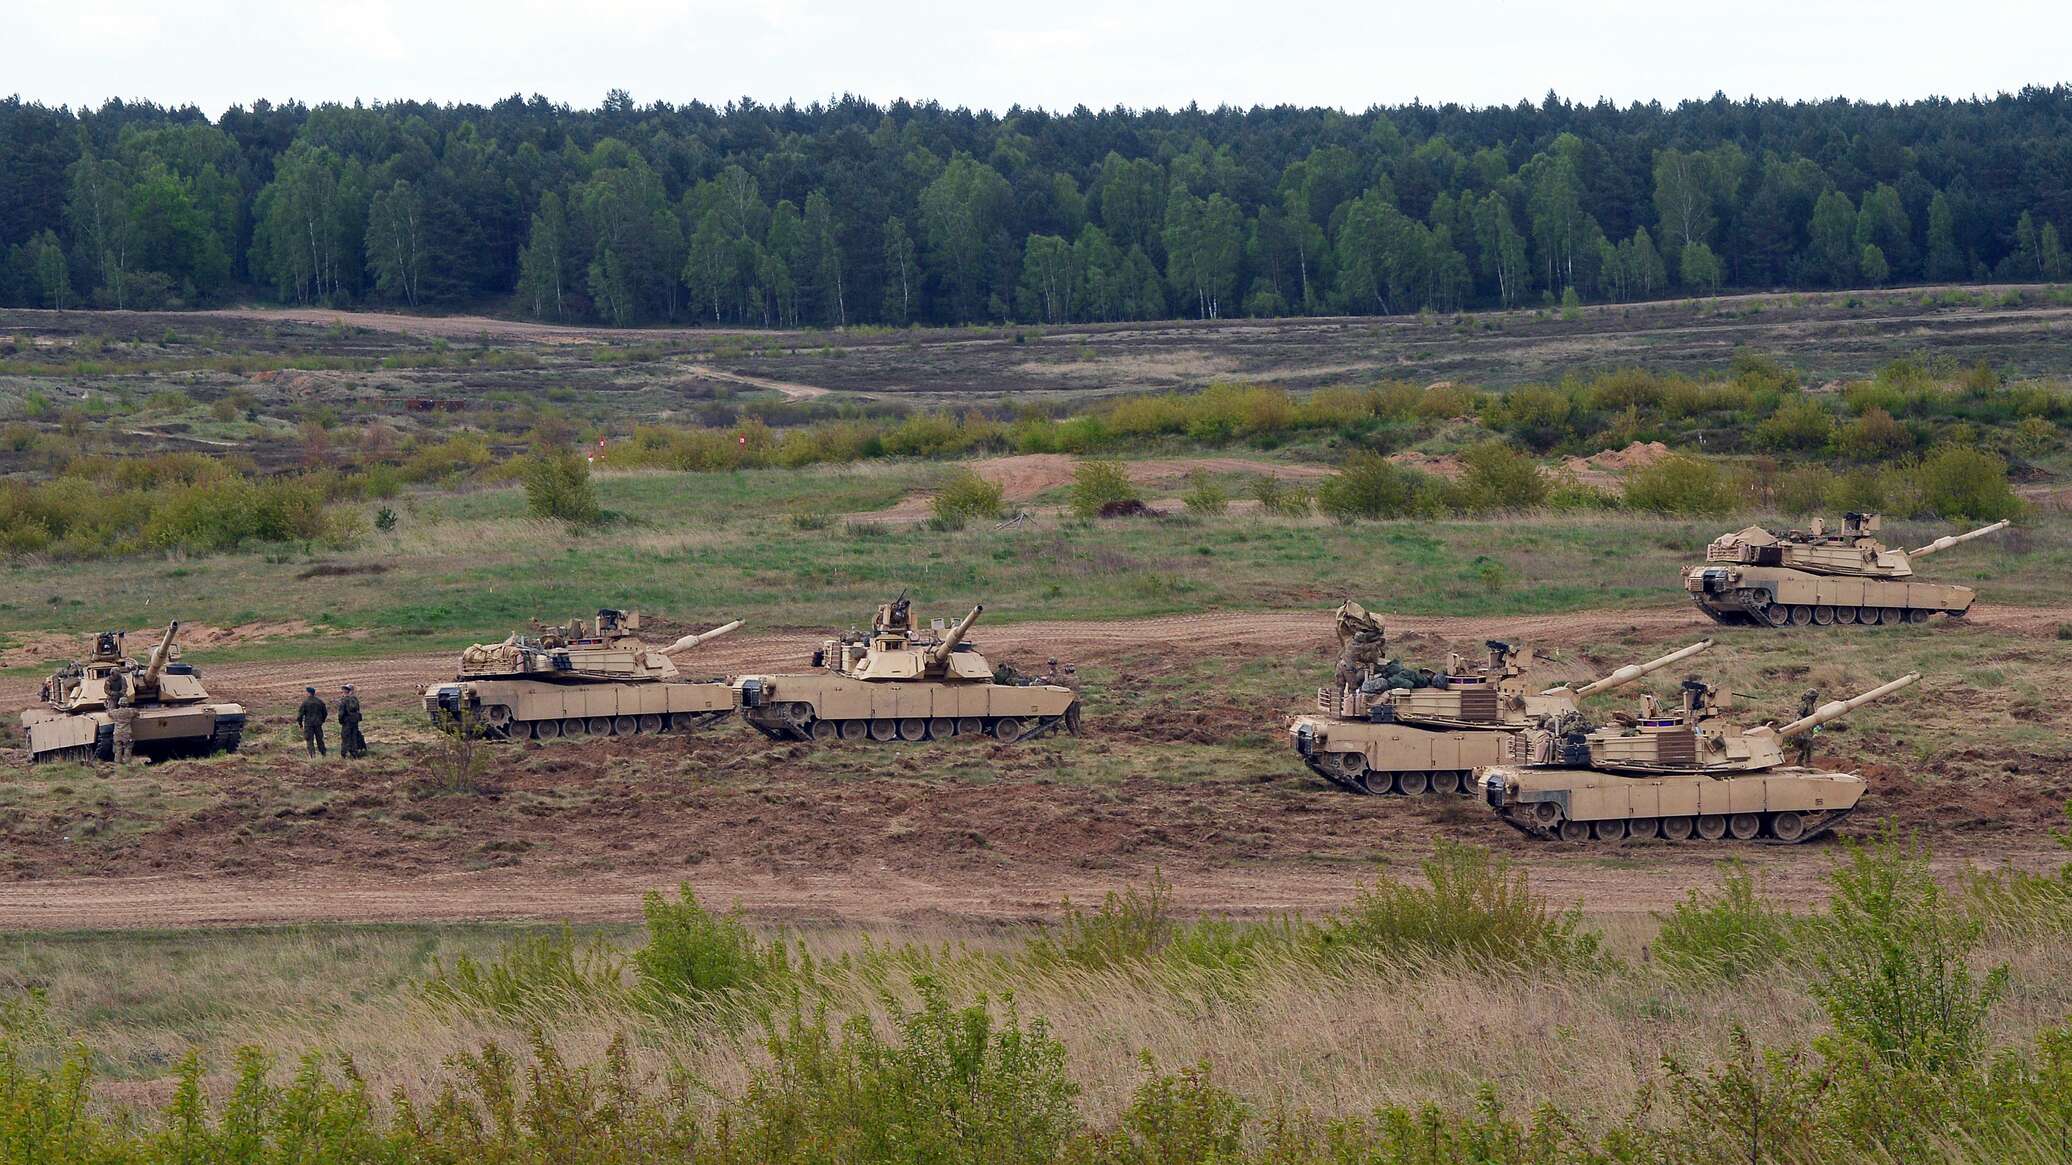 الشركة المصنعة للمسيرات الروسية "الغول": تدمير دبابة أبرامز أخرى بالقرب من أفدييفكا